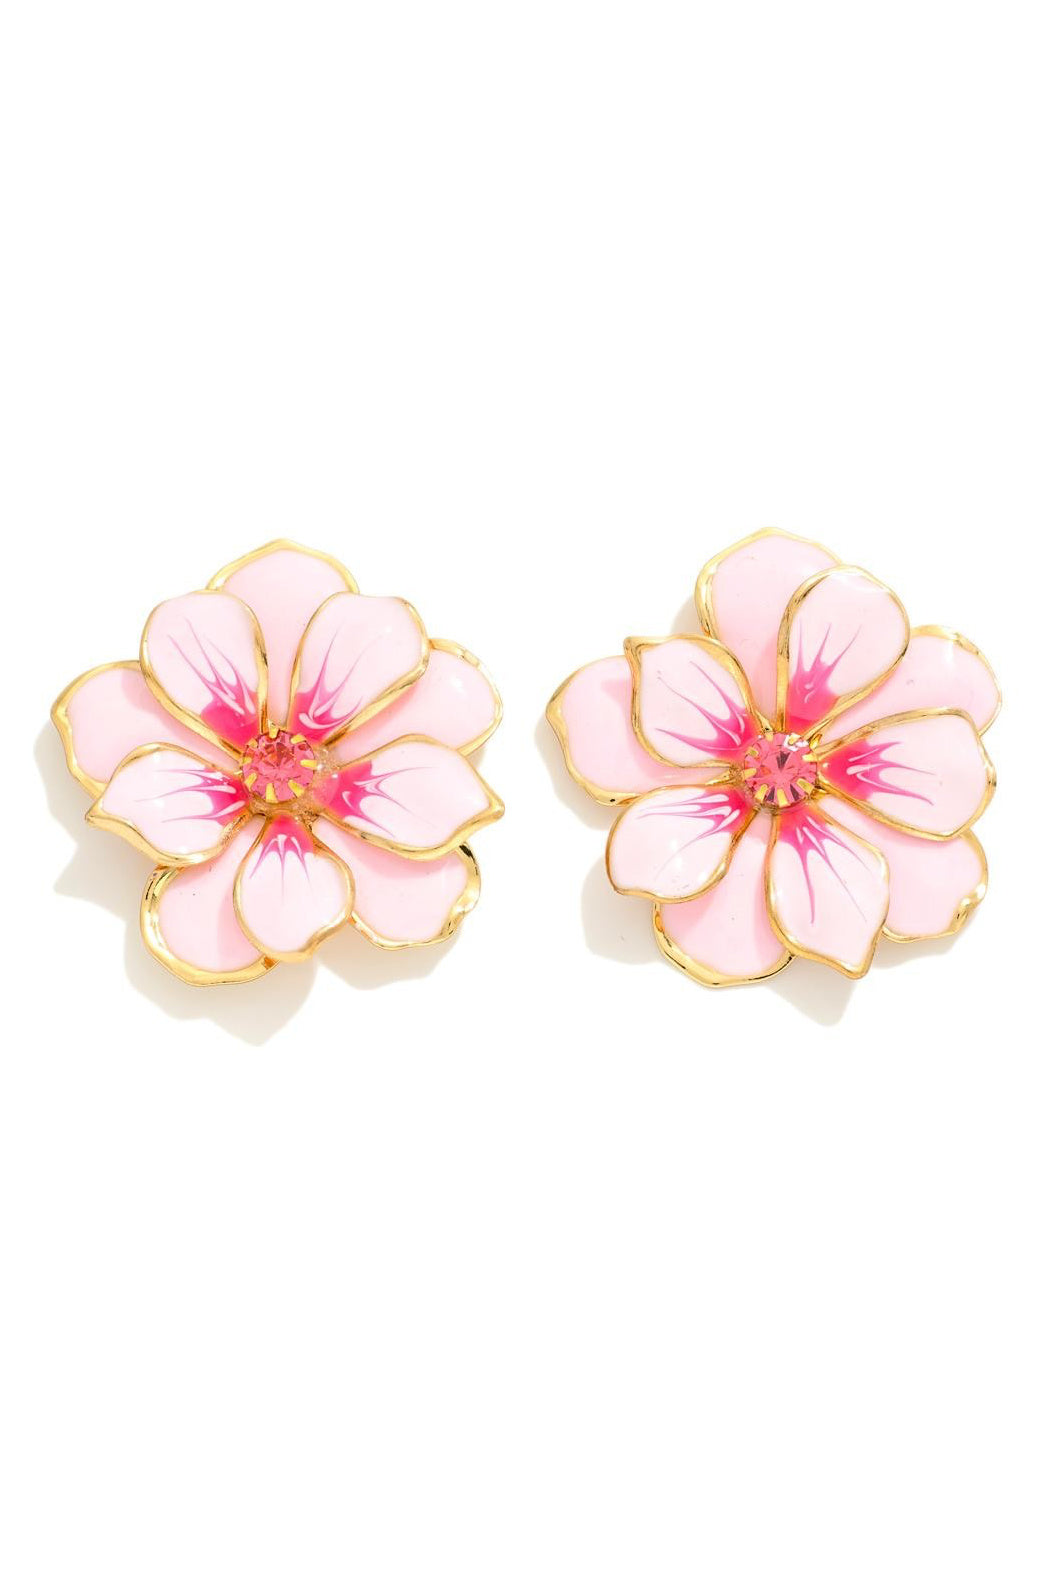 Painted Enamel Flower Earrings